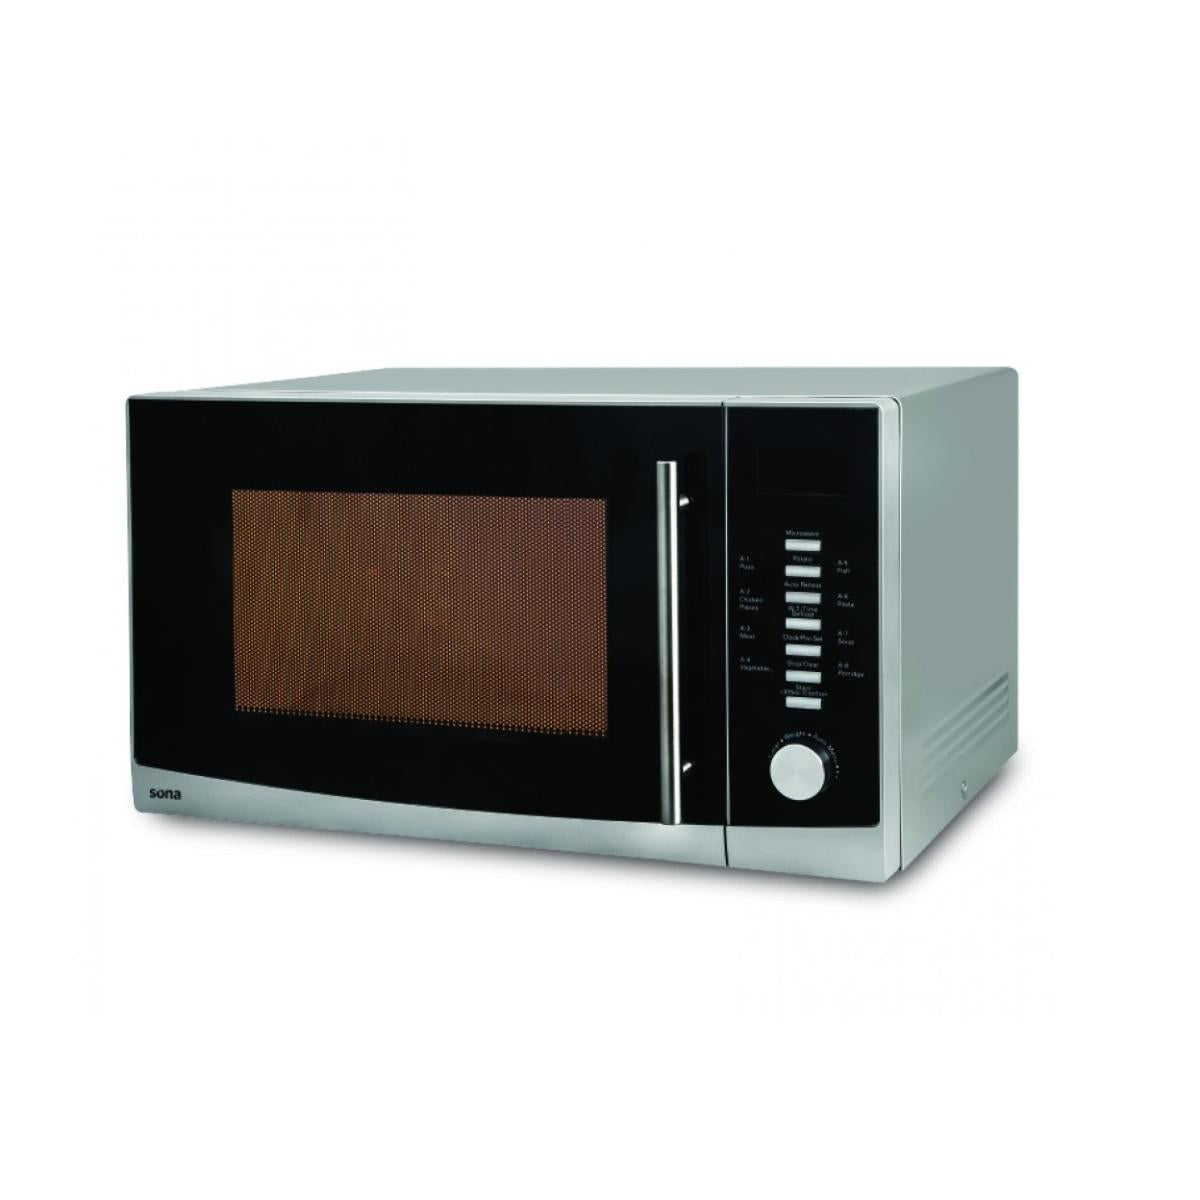 EM-30LSH/sona microwave oven 30 liter    30 liter silver SILVER / 30 L